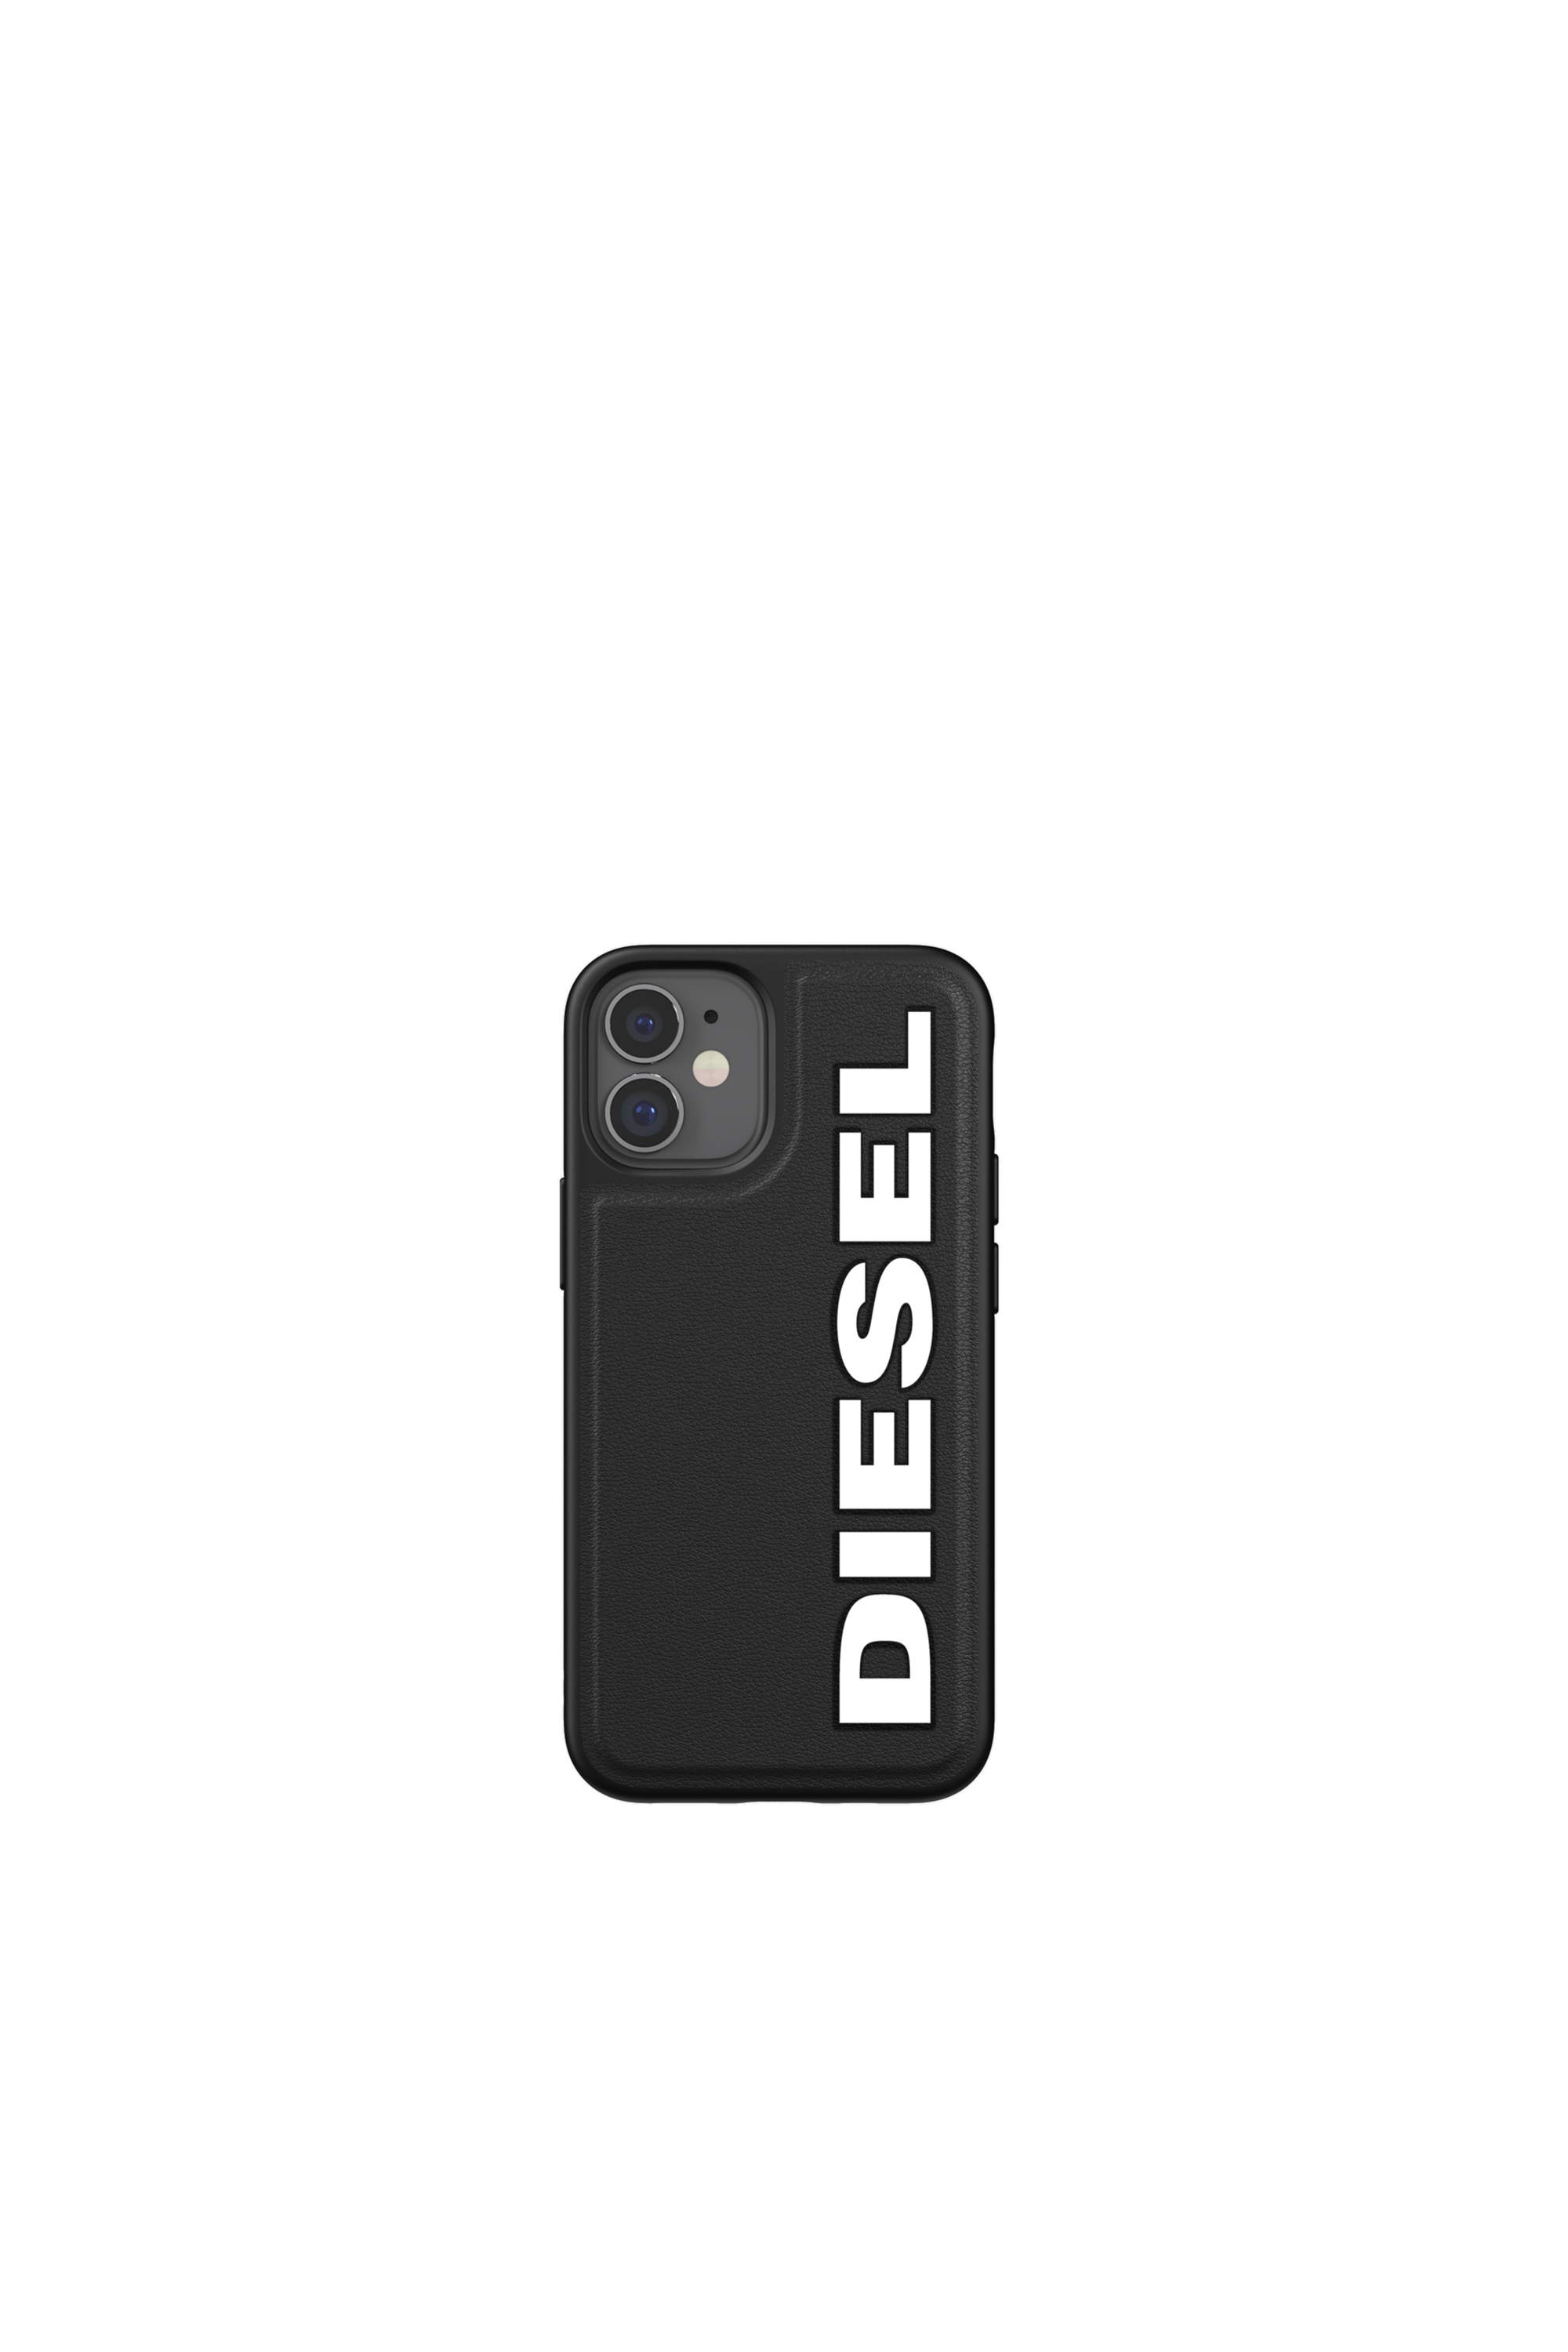 Diesel - 42491, Black - Image 2